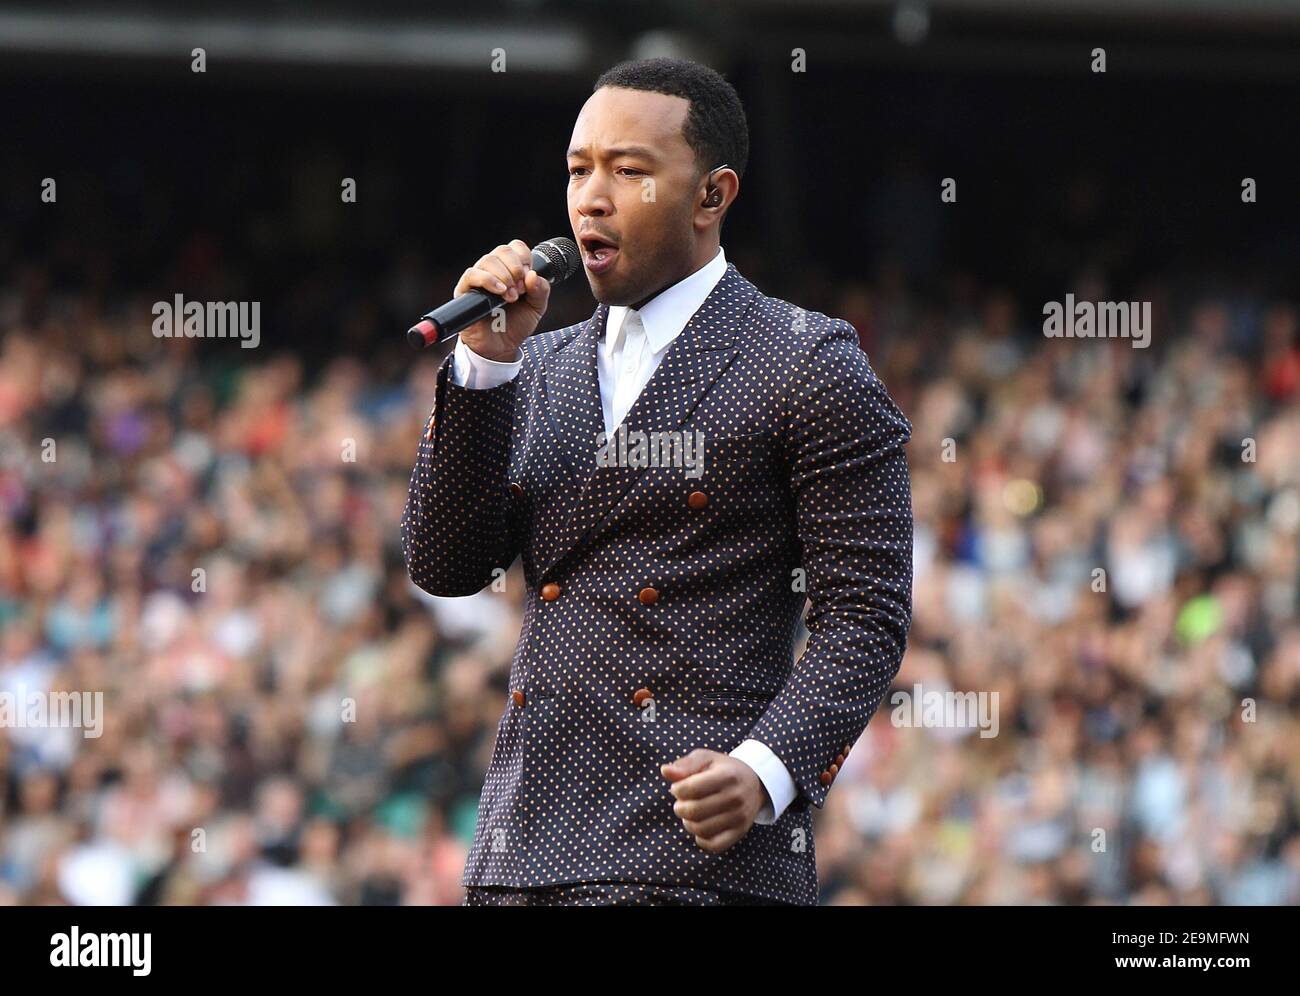 Twickenham, Großbritannien. 1.. Juni 2013. John Legend tritt auf der Bühne beim Live-Konzert von Sound of Change im Chime for Change im Twickenham Stadium in Twickenham auf. Kredit: S.A.M./Alamy KREDIT: S.A.M./Alamy Stockfoto